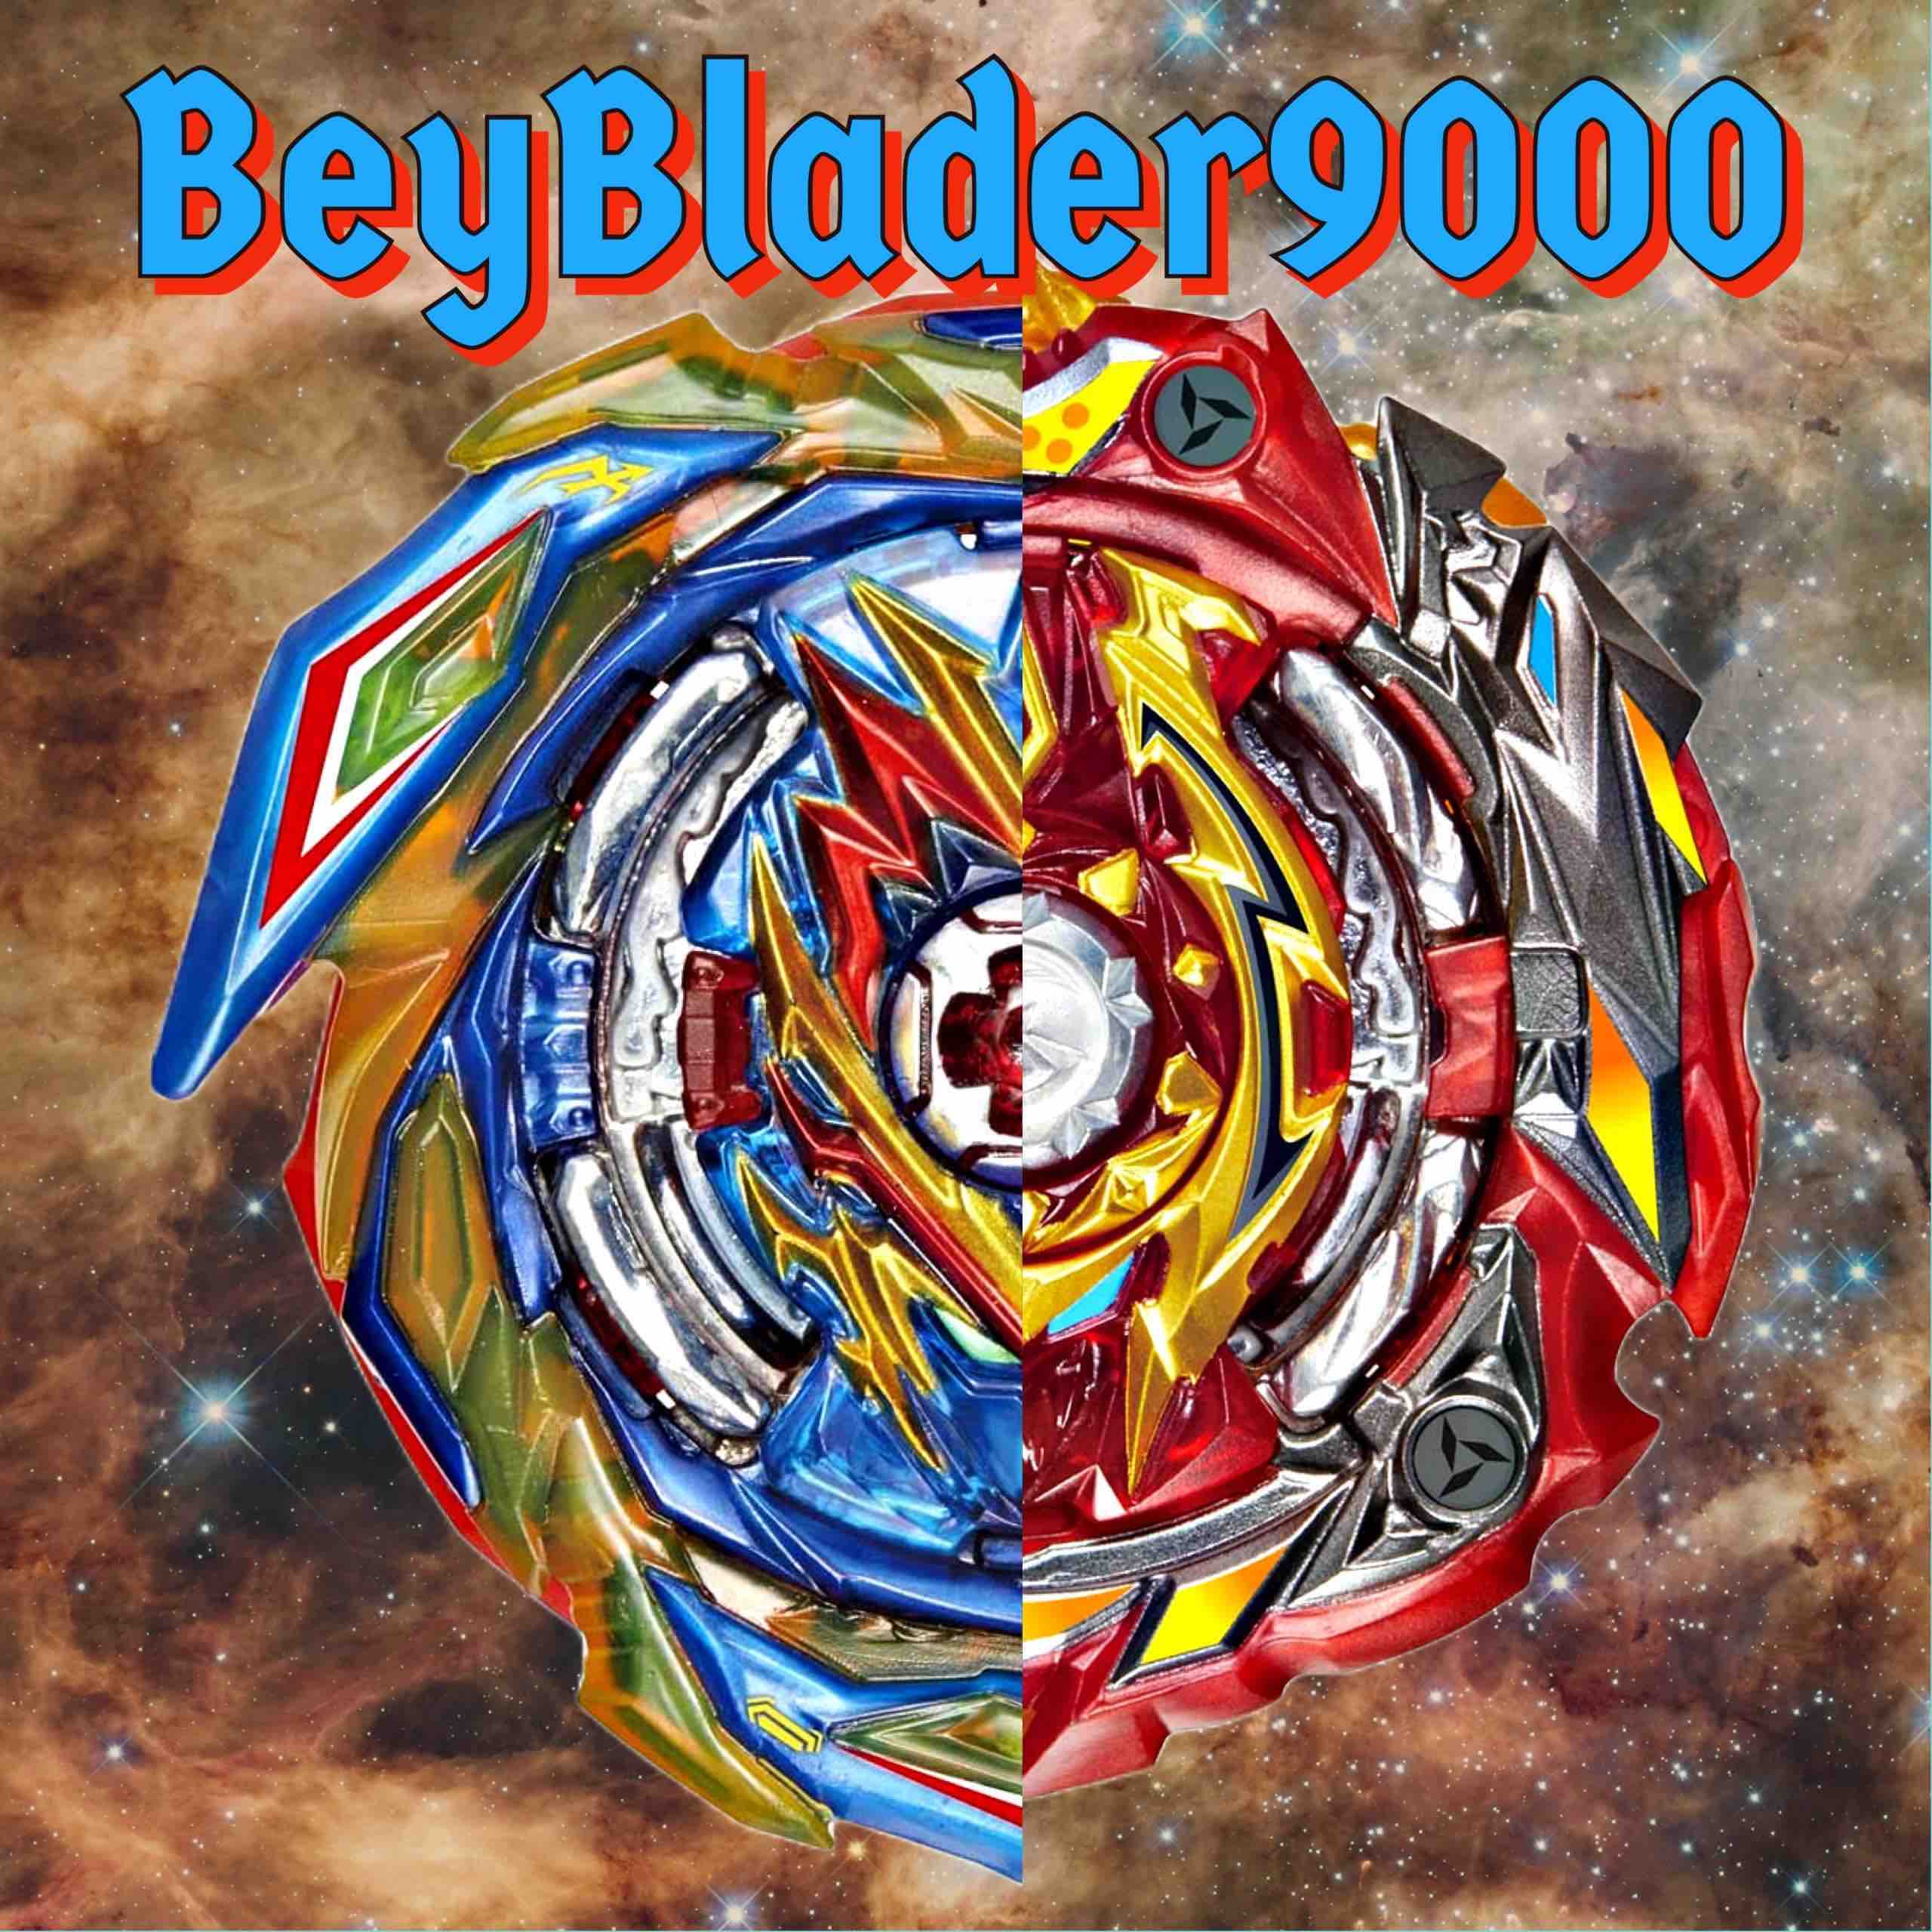 BeyBlader9000's avatar